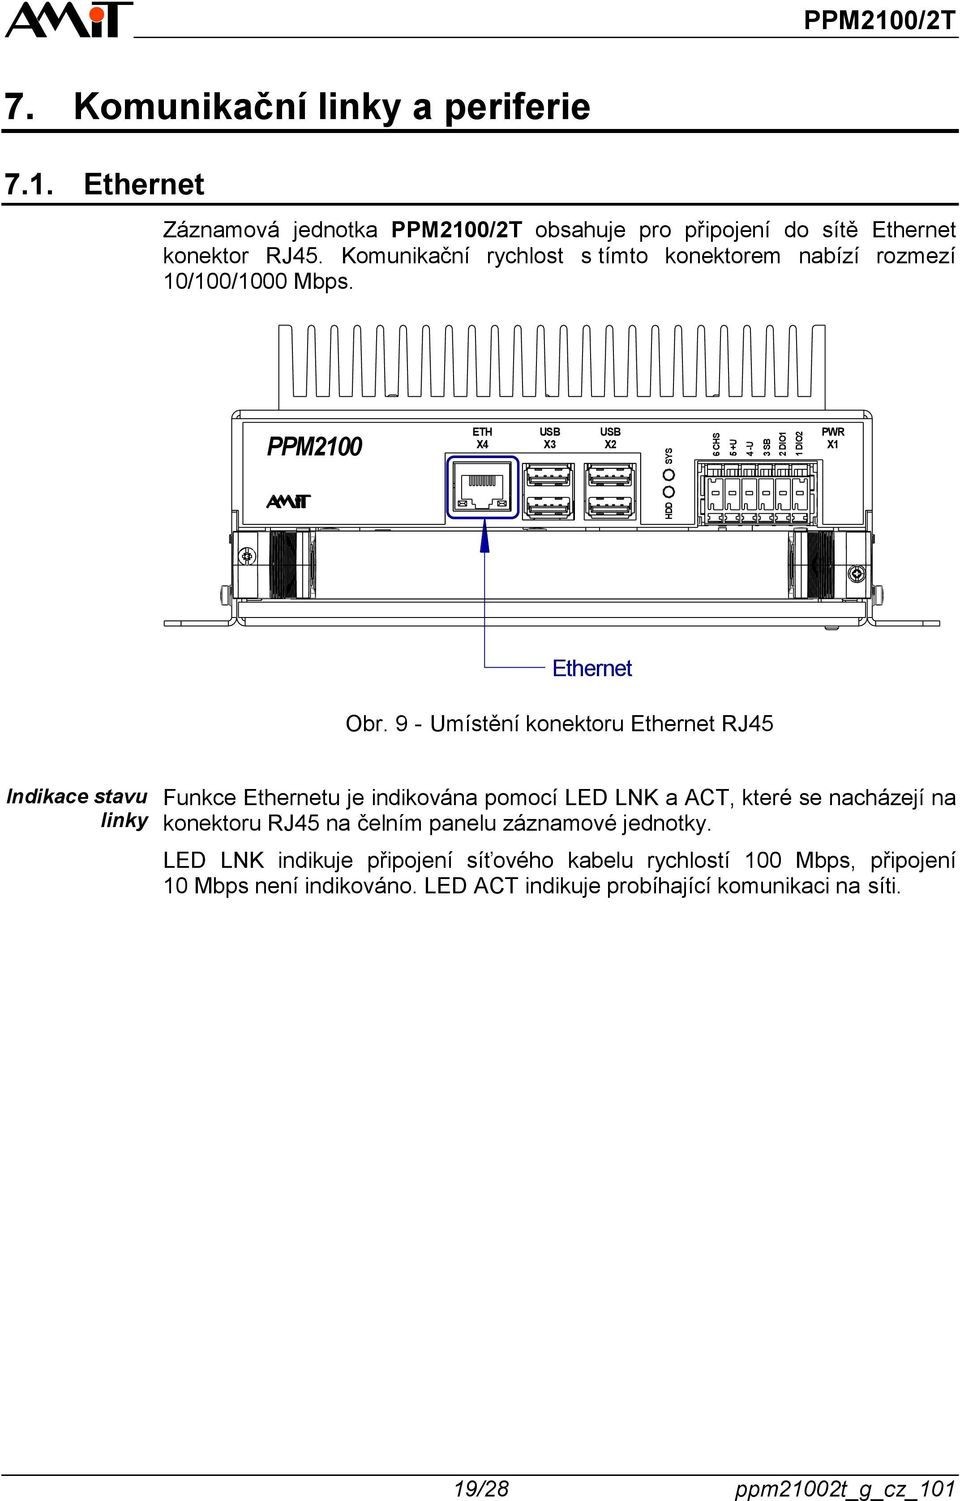 9 - Umístění konektoru Ethernet RJ45 Indikace stavu linky Funkce Ethernetu je indikována pomocí LED LNK a ACT, které se nacházejí na konektoru RJ45 na čelním panelu